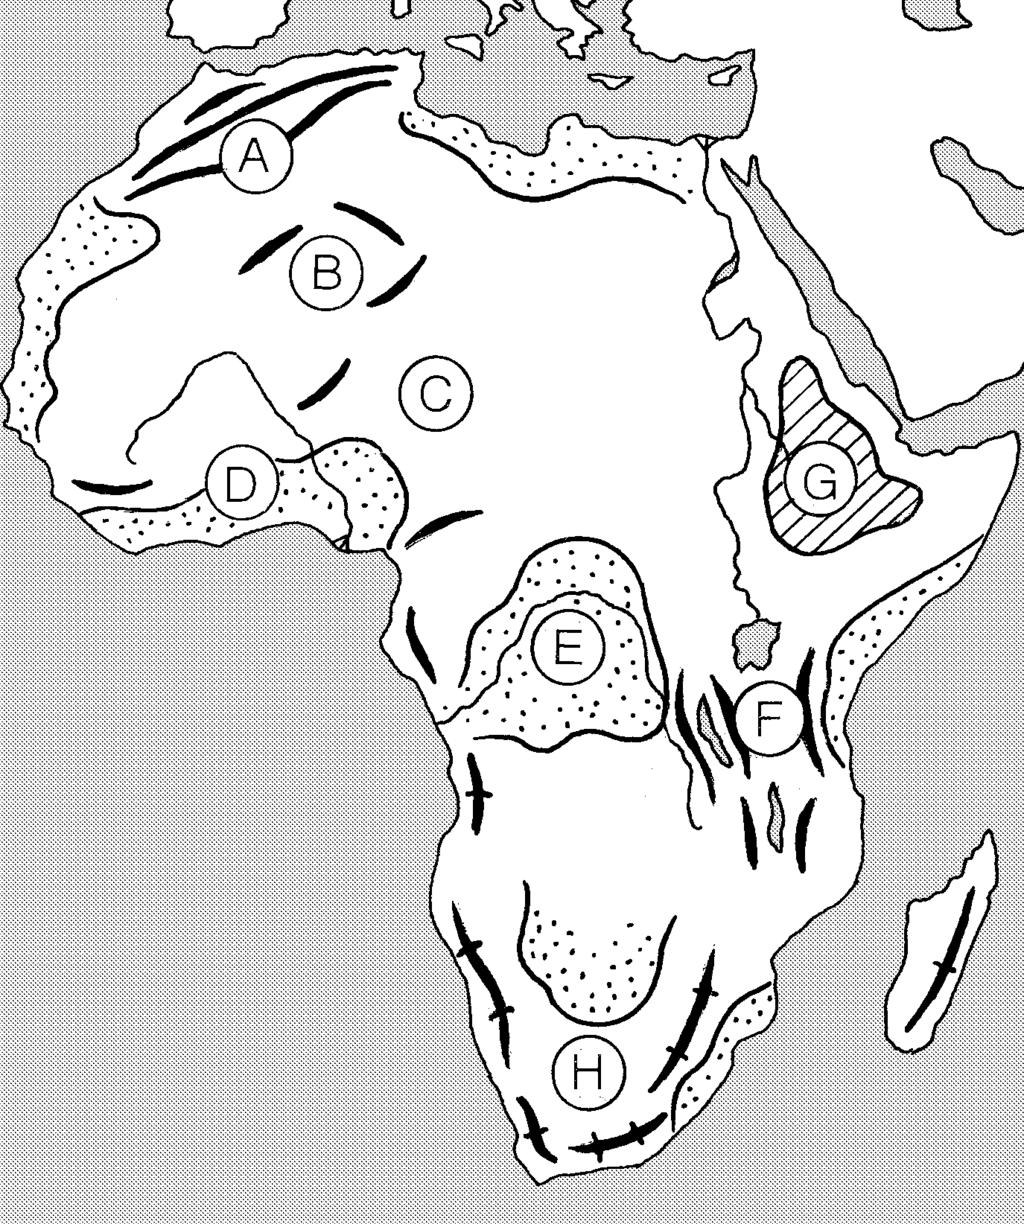 PRVOHORY A DRUHOHORY Povrch Afriky a zlialo ho, v ktorom sa horniny napr.. TREŤOHORY A ŠTVRTOHORY Povrch Afriky pretvárali. Pozdĺž zlomov vznikla činnosť. Na SZ Afriky sa vytvorilo vrásové pohorie.